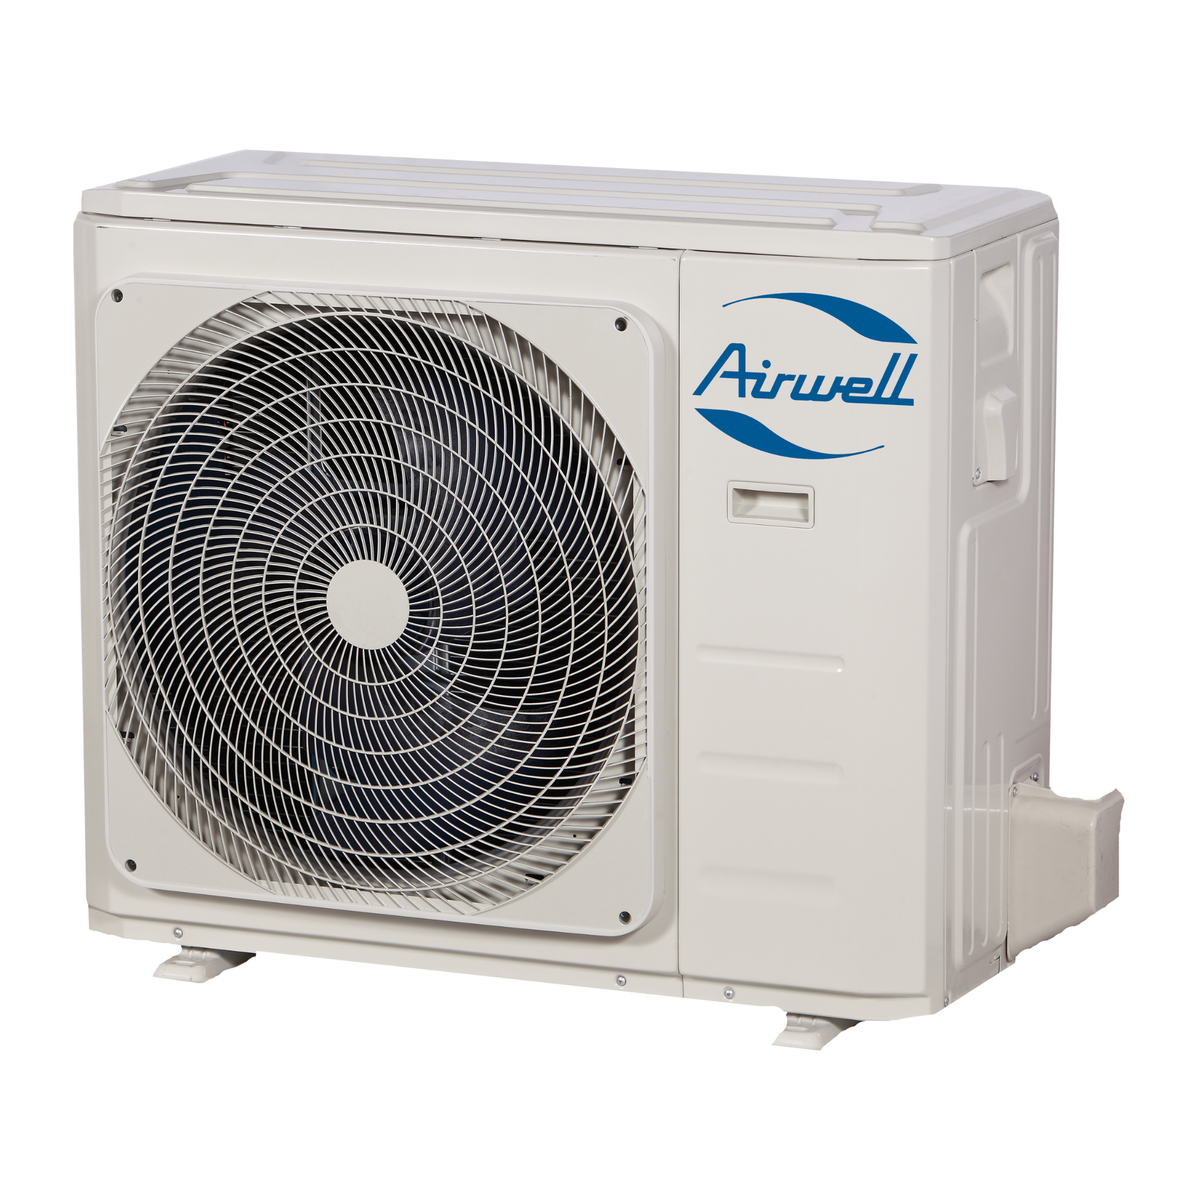 Oro kondicionierius/šilumos siurblys Airwell AURA, efektyvus šildymas iki -15°C, šaldymas 3,52 kW, šildymas 3,81 kW